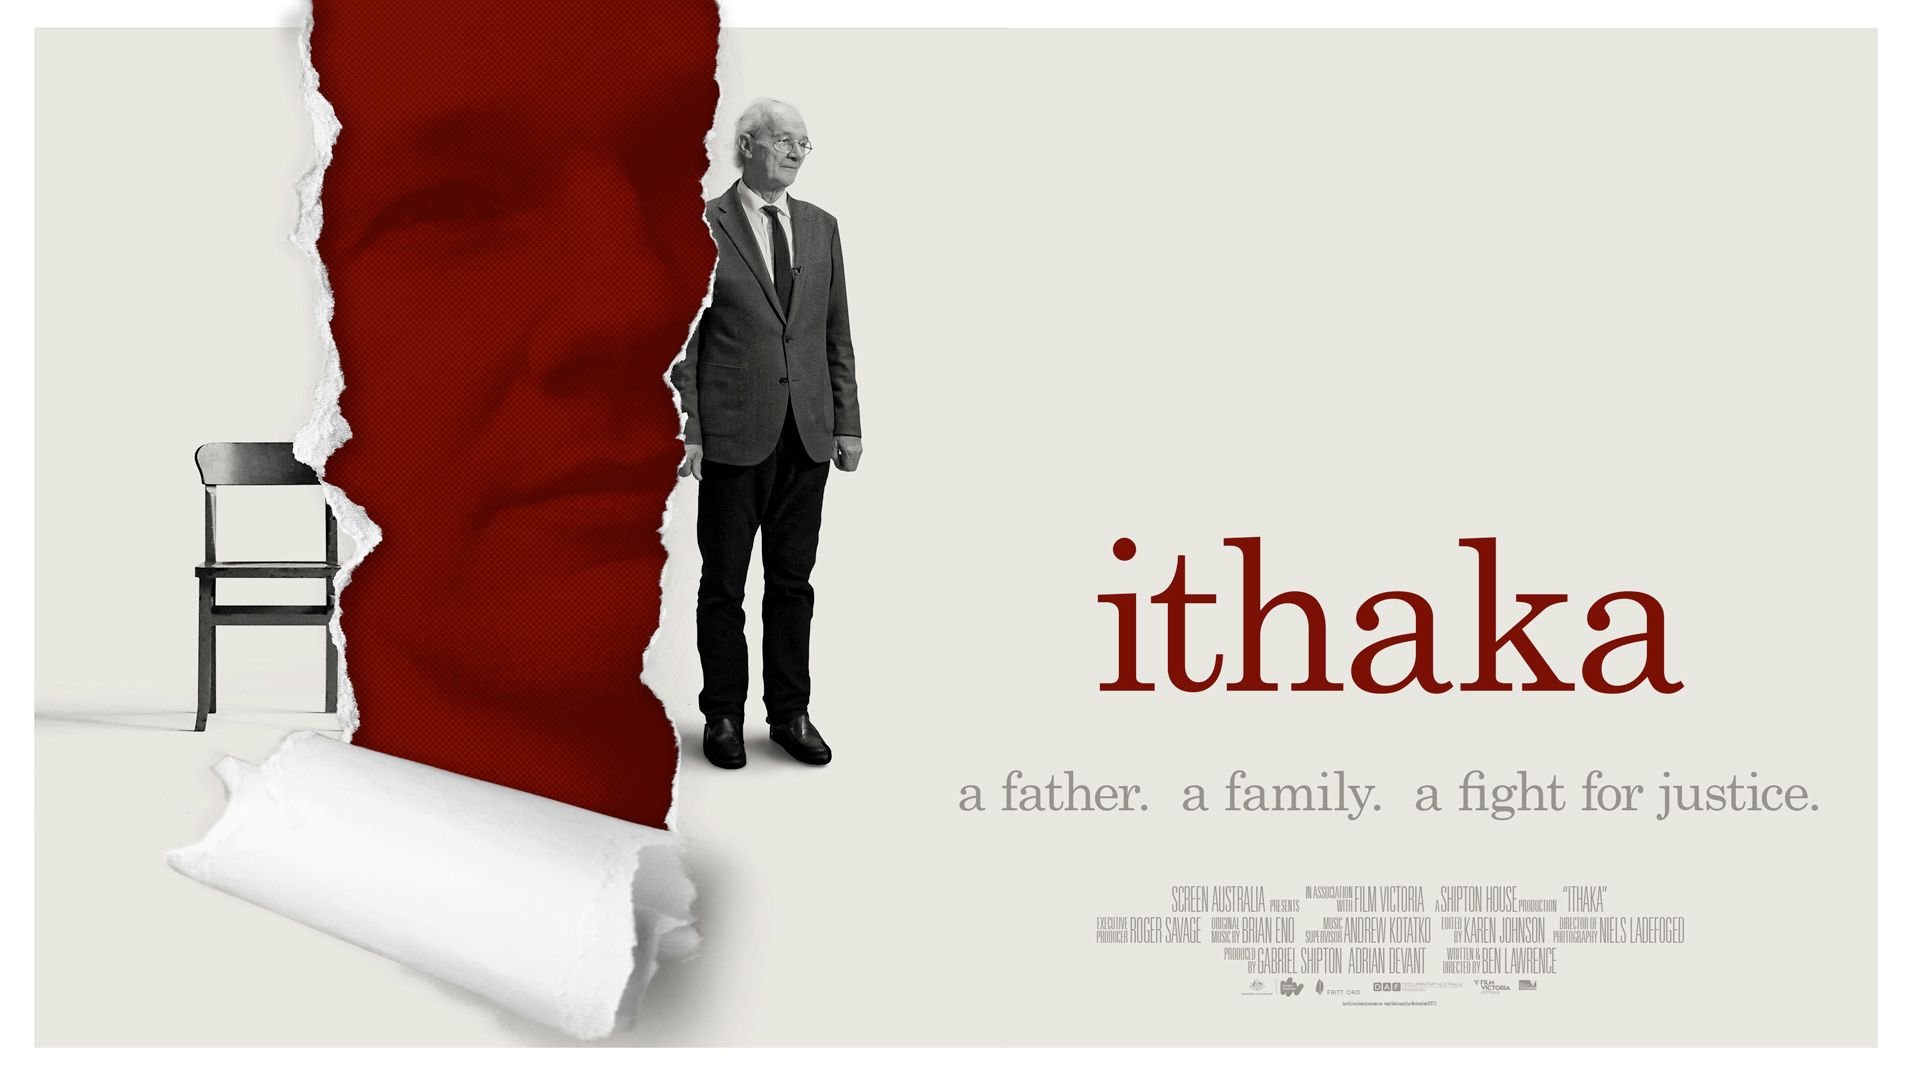 "Ithaka: La Lotta per la Verità e la Libertà di Julian Assange" - WikiLeaks